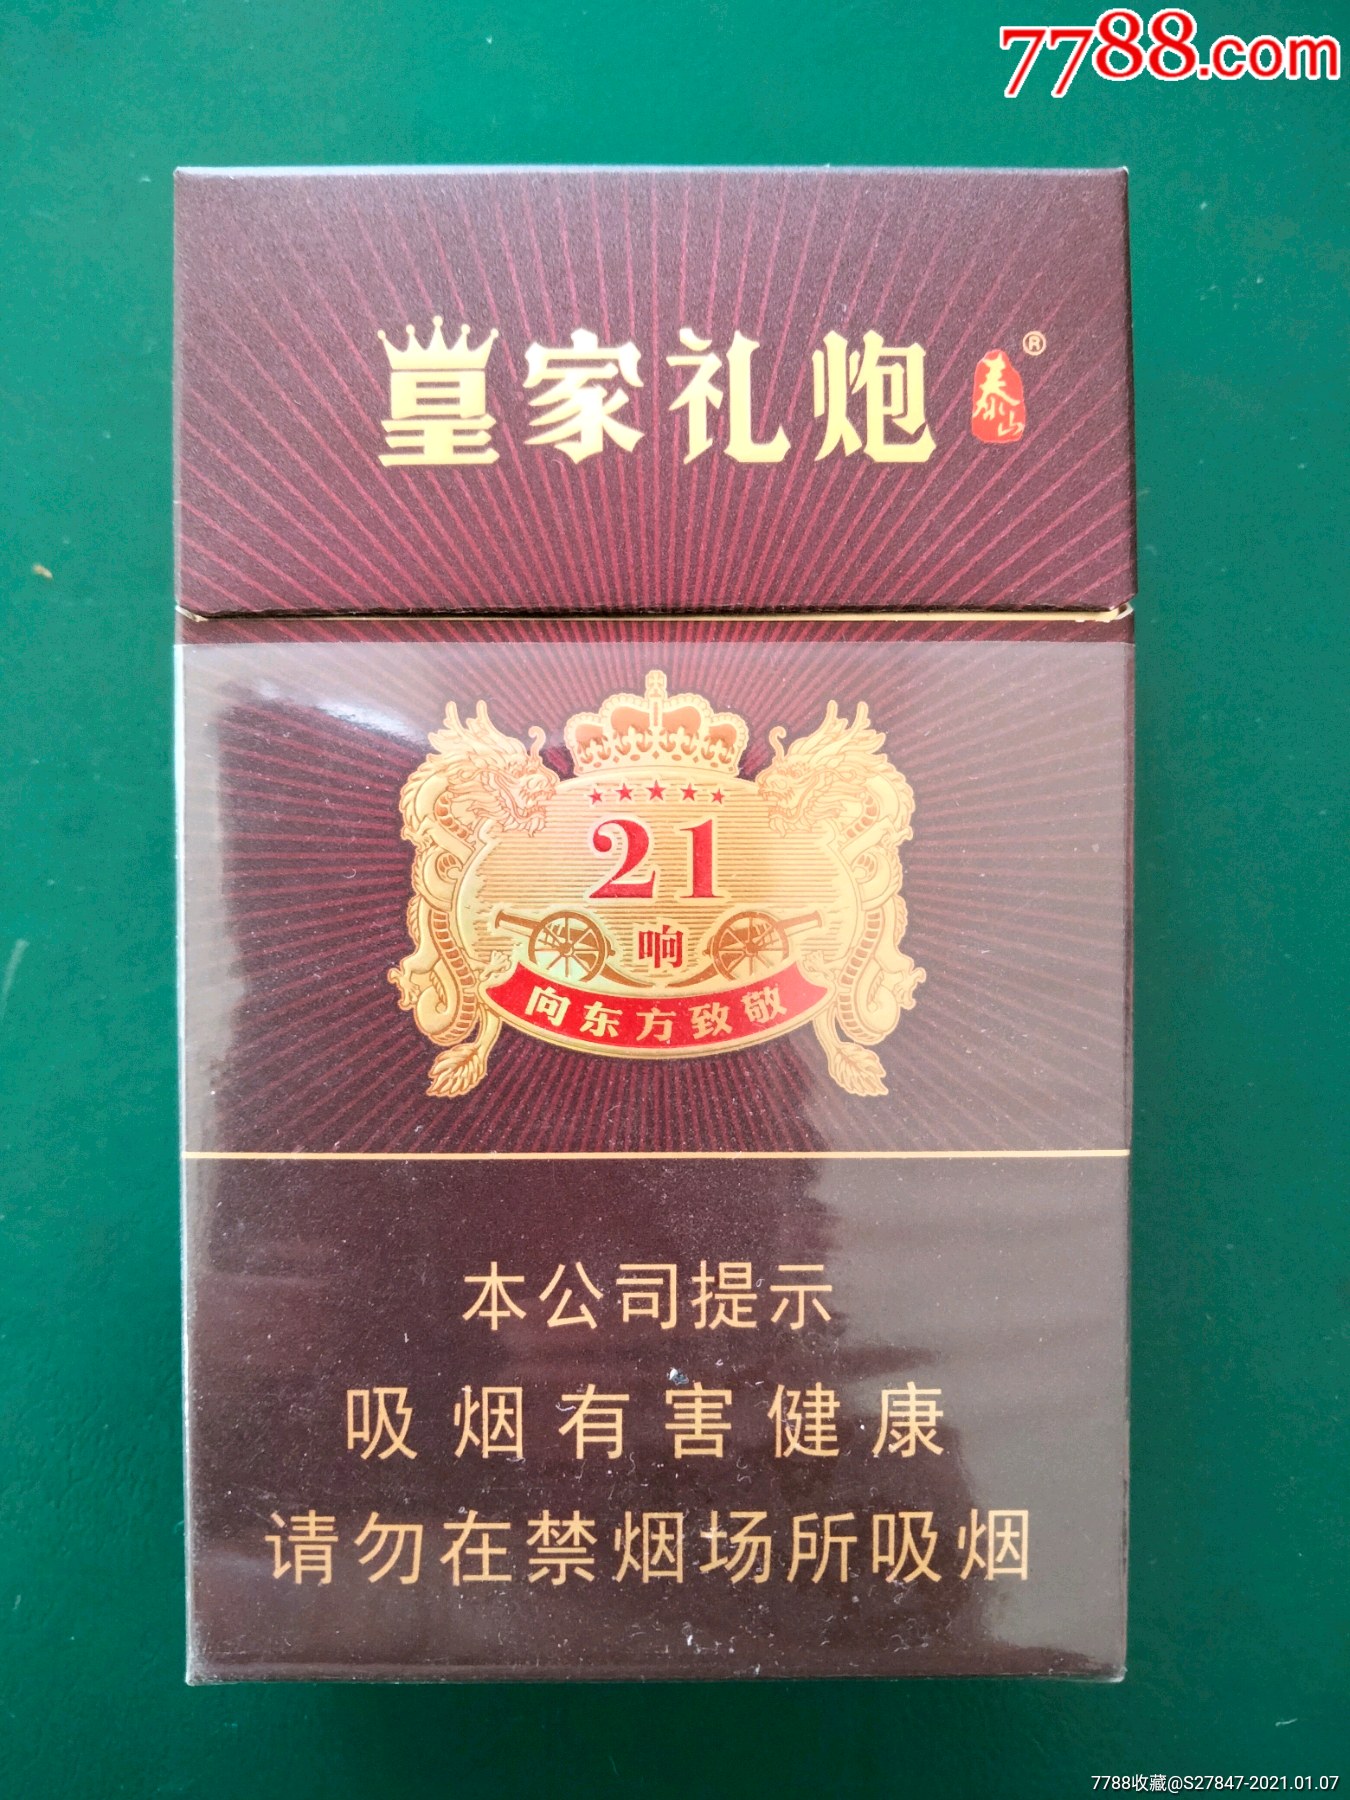 皇家礼炮21响香烟售价图片